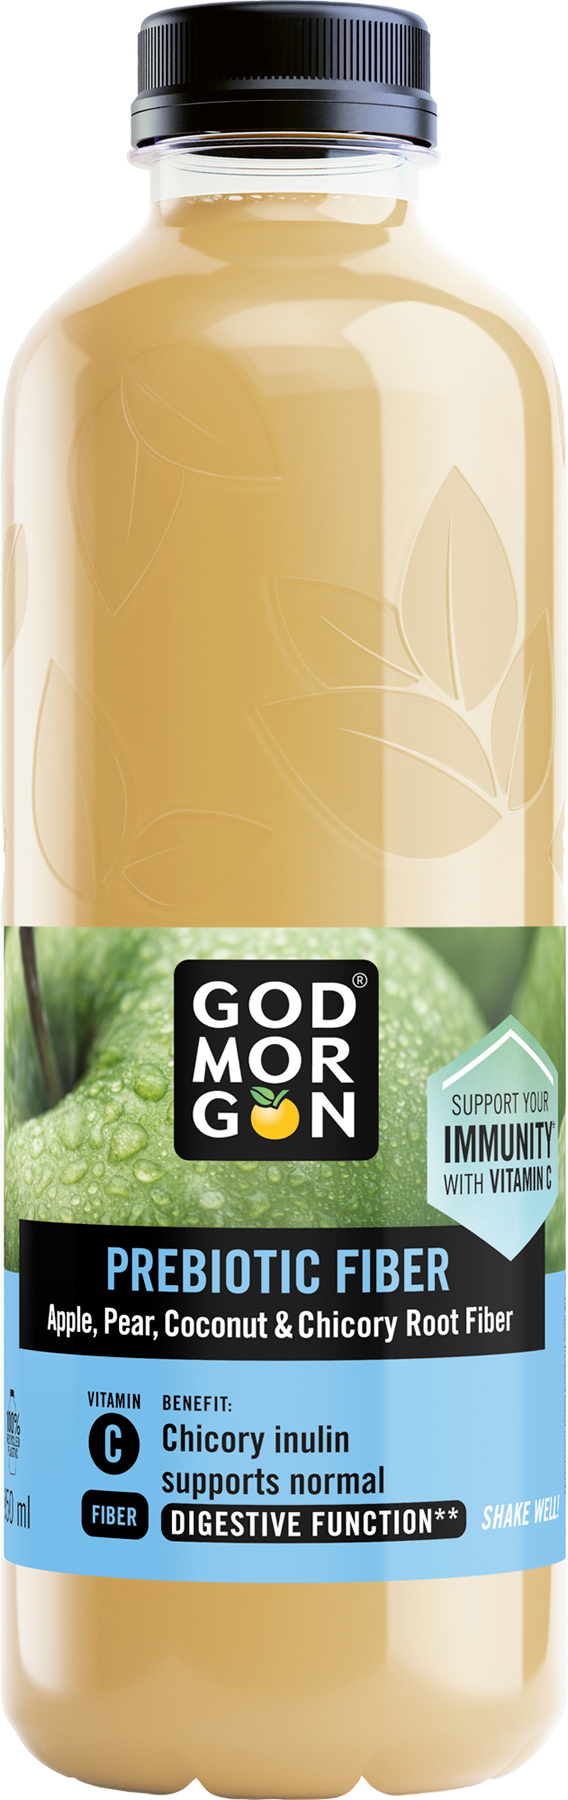 God Morgon® Prebiotic FIber 0,85L Packshot.png